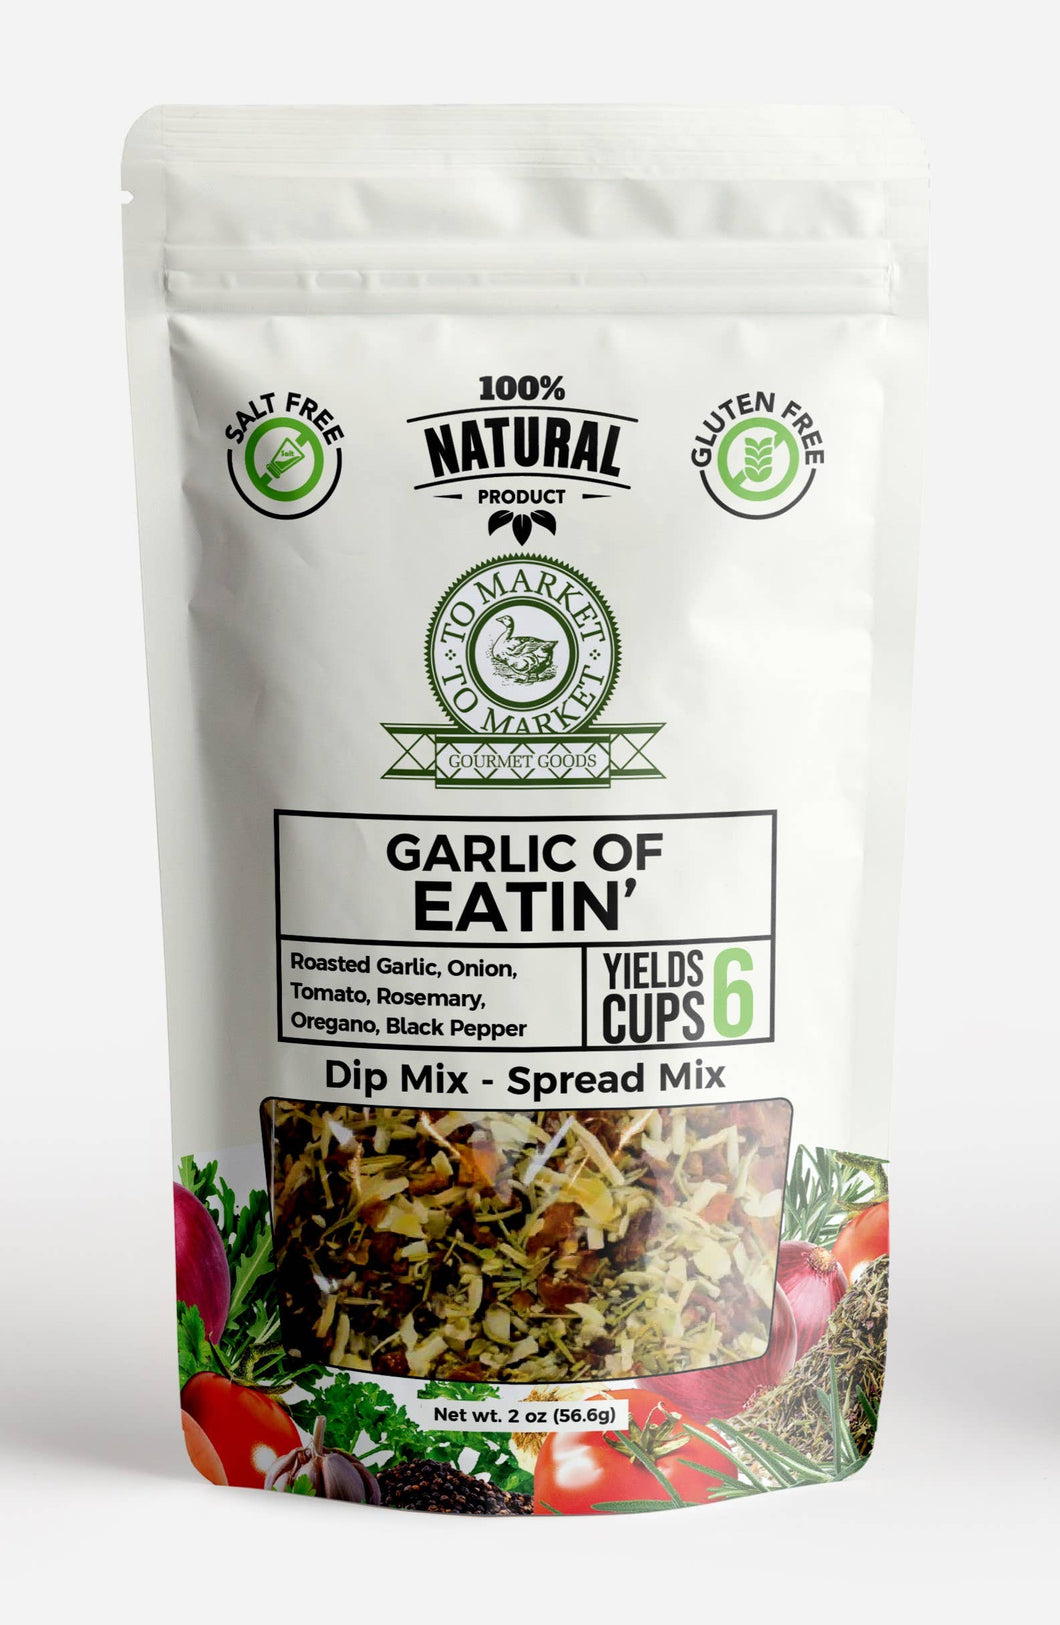 Garlic of Eatin' - Dip Mix